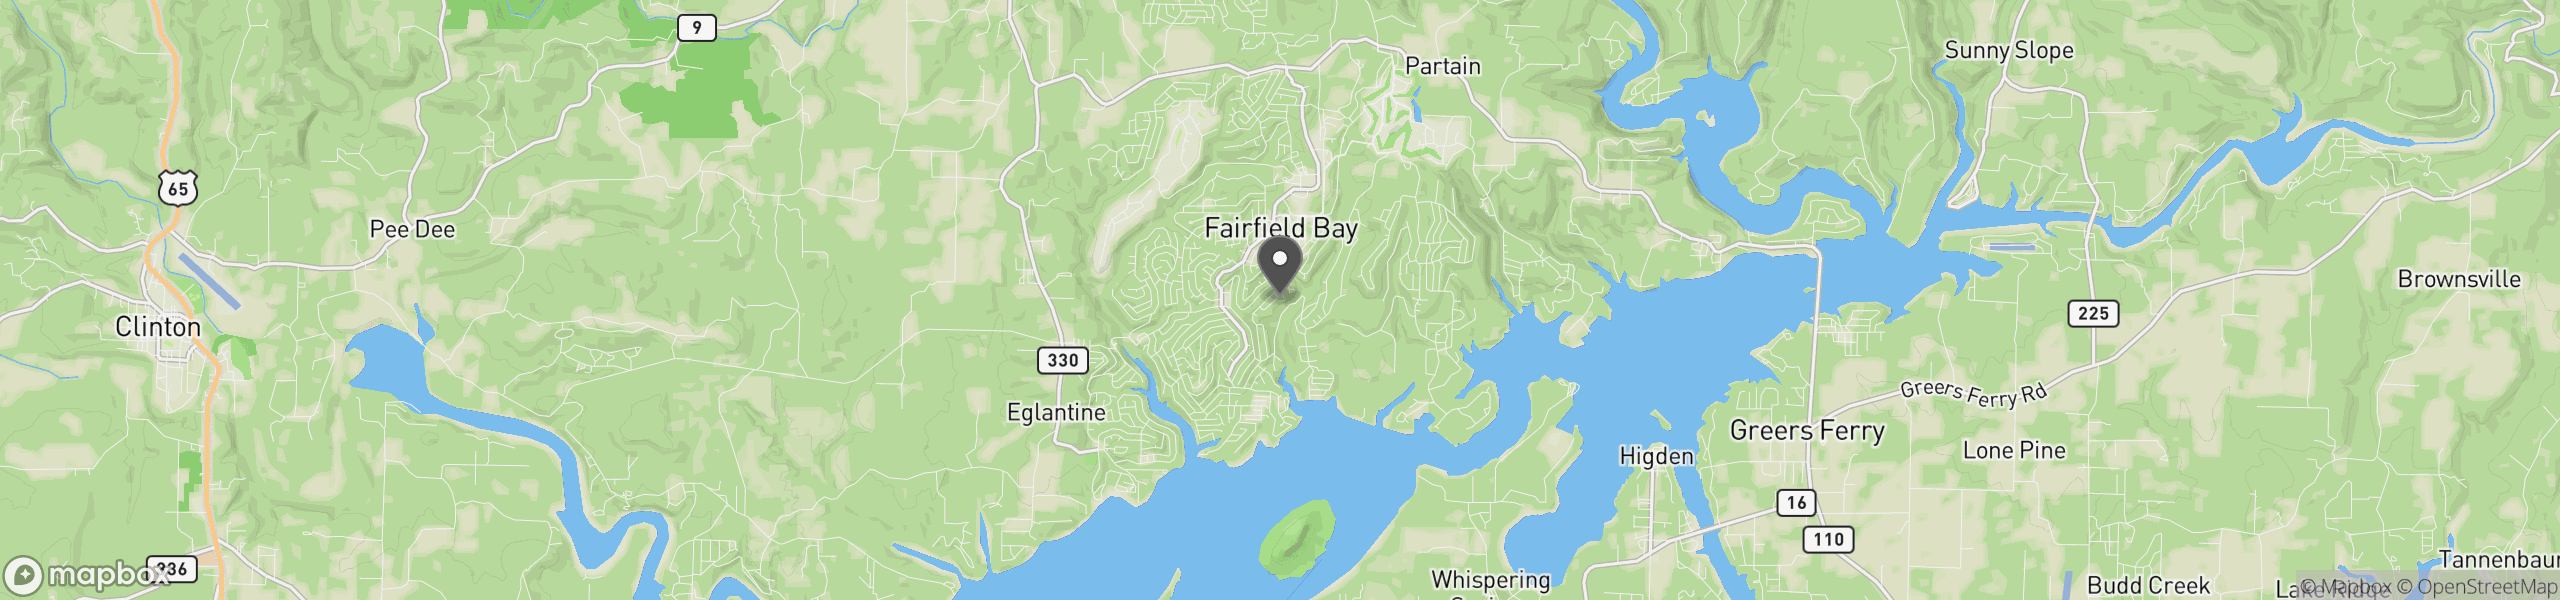 Fairfield Bay, AR 72088